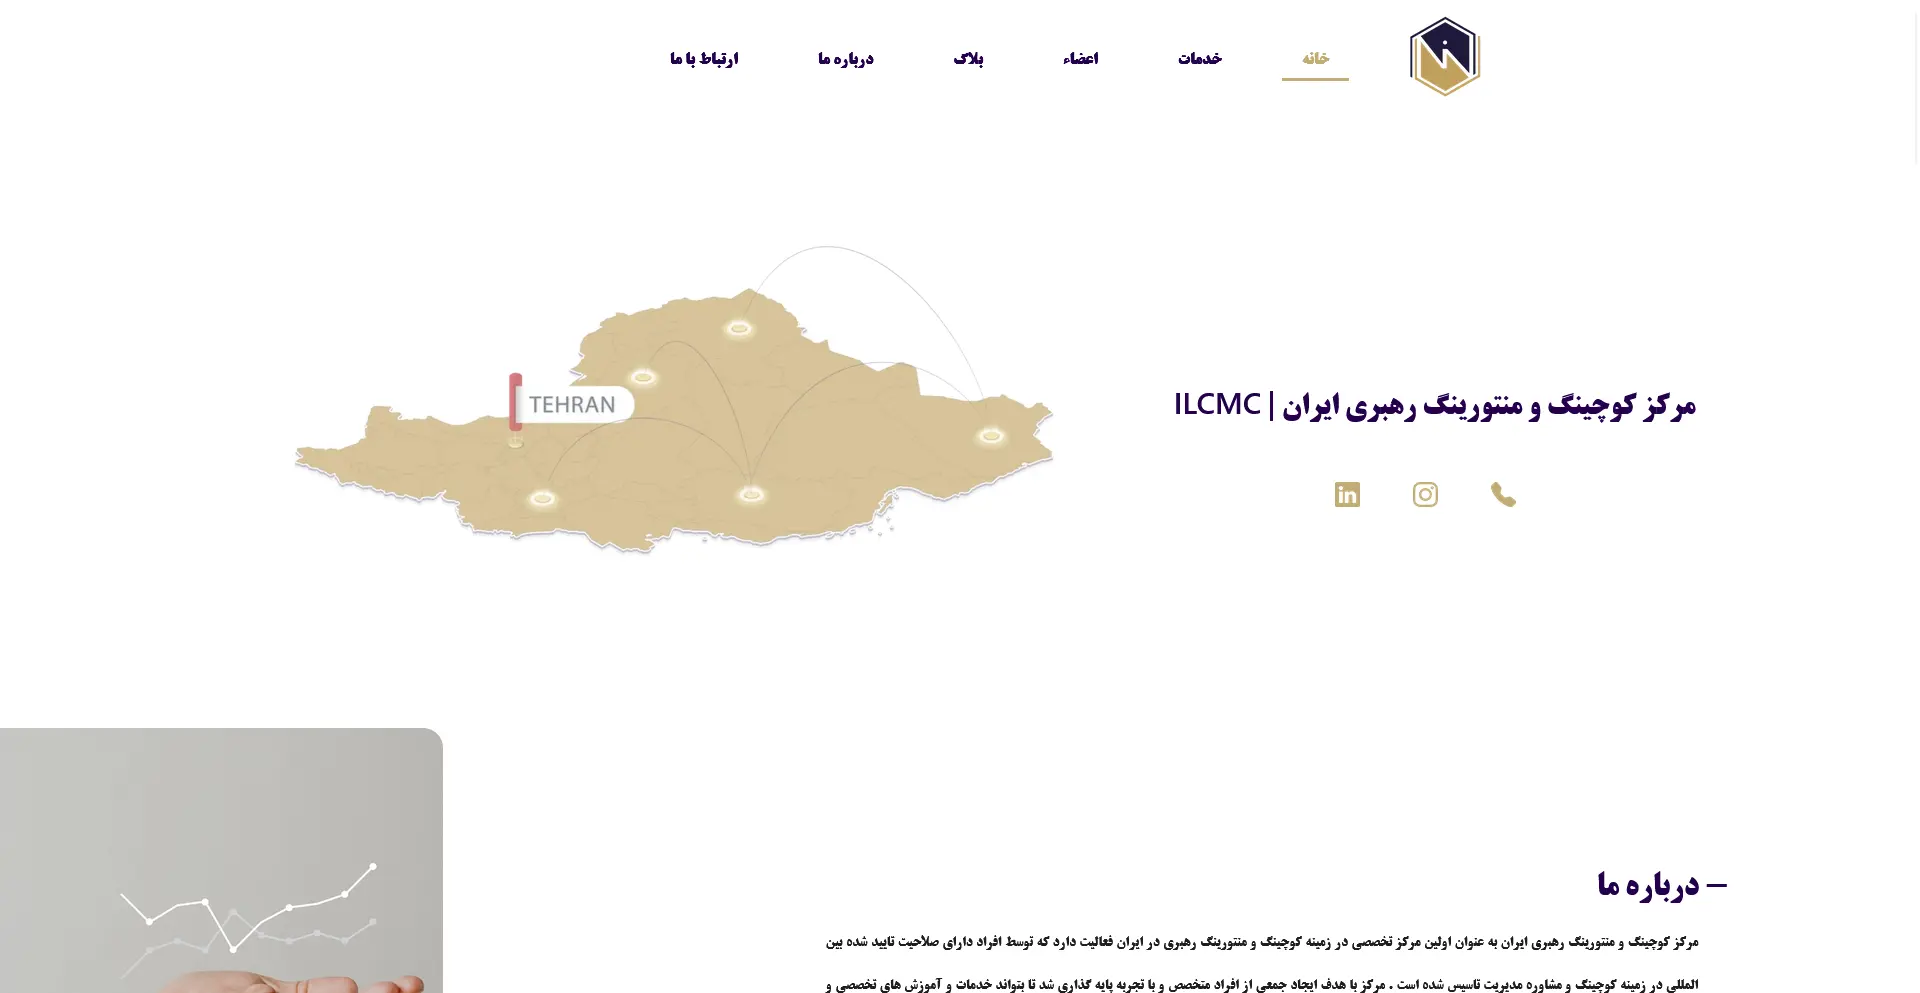 وب سایت مرکز کوچینگ و منتورینگ رهبری ایران